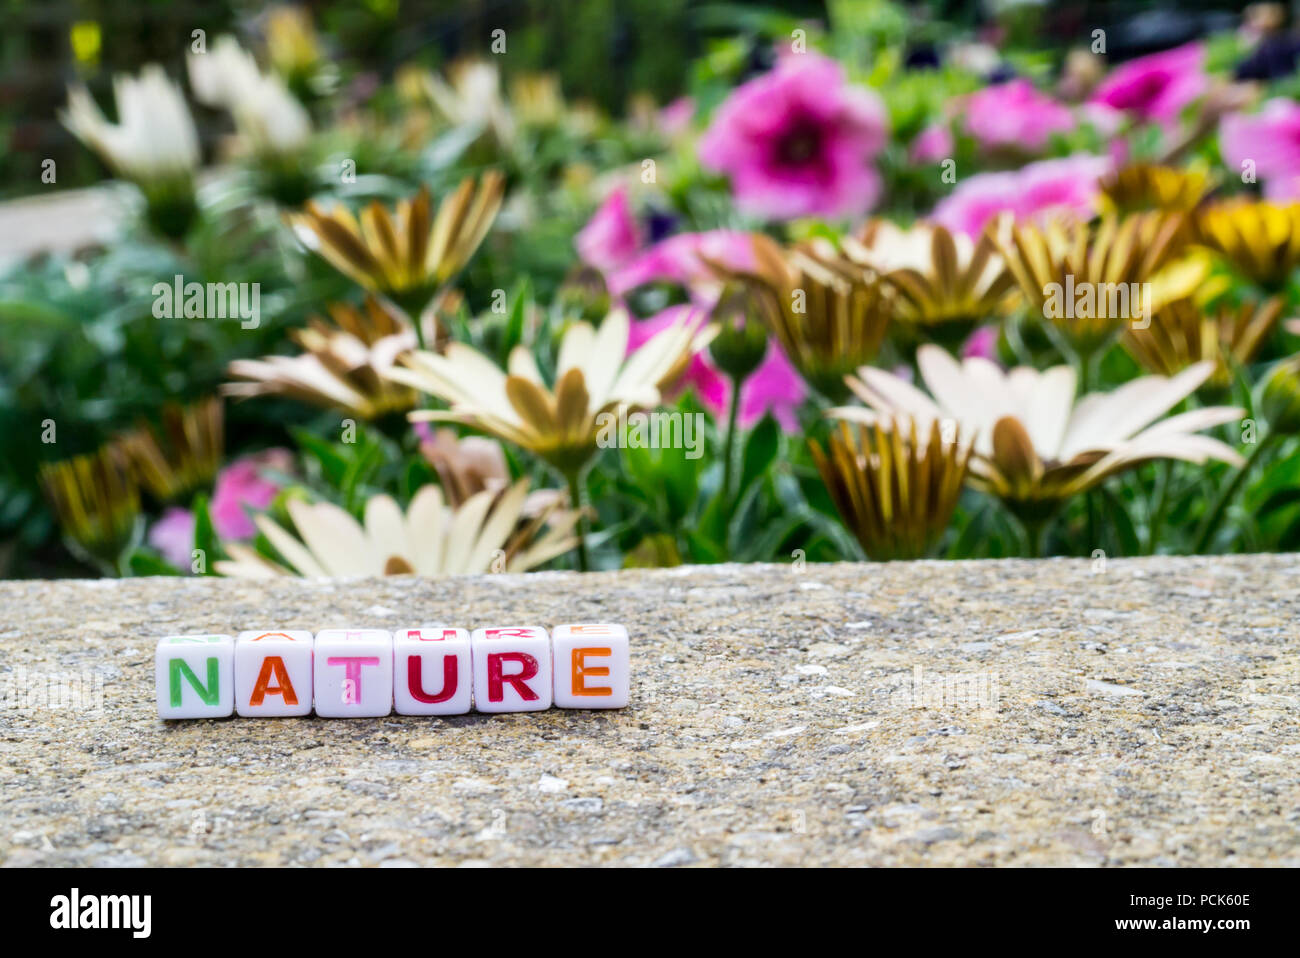 Perles de l'orthographe alphabétique 'nature' à côté d'un lit de fleur Banque D'Images